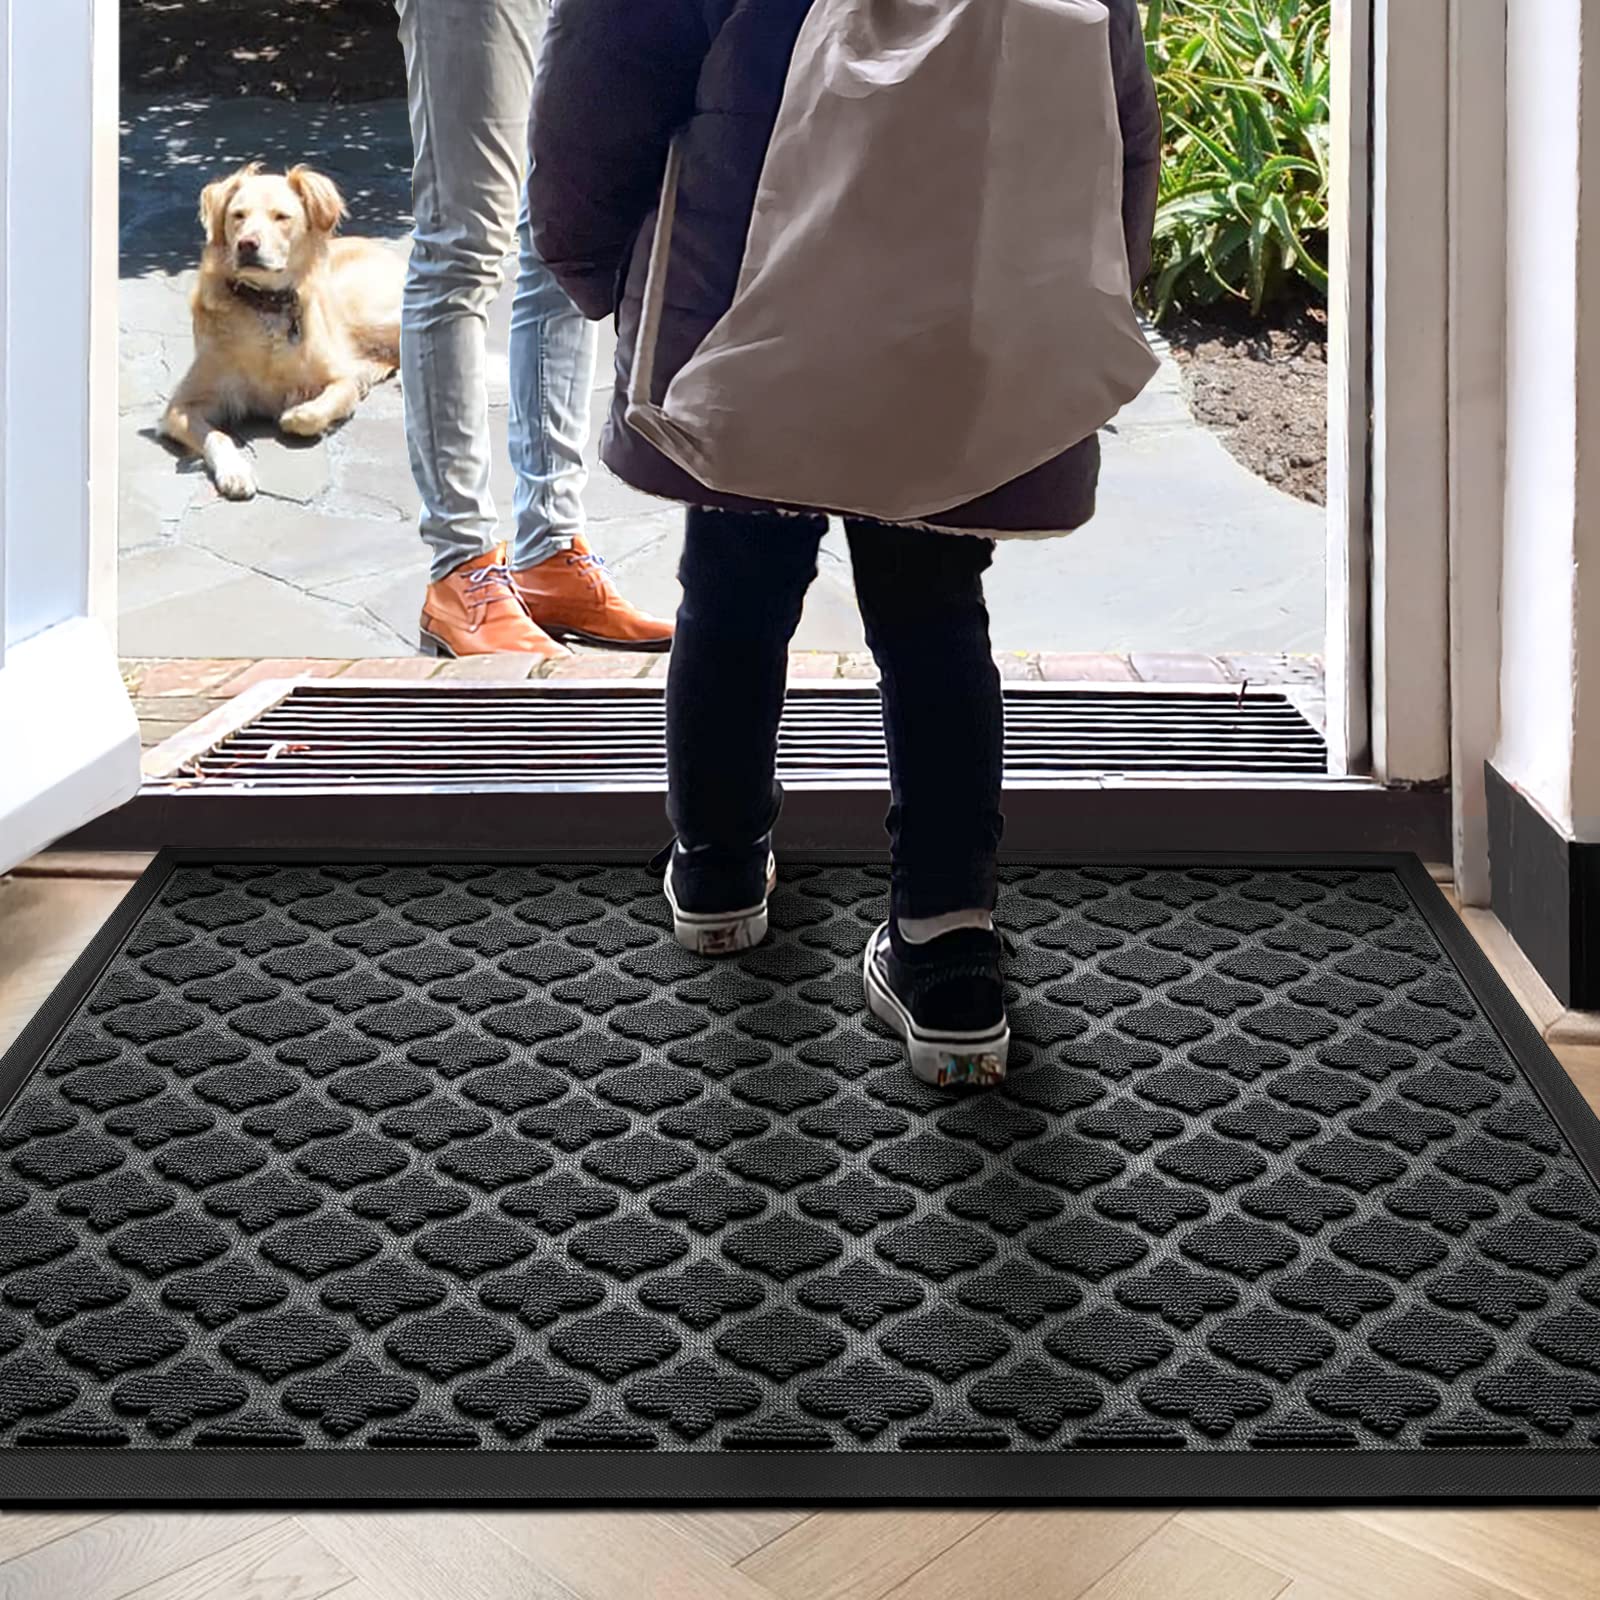 dexi 1 DEXI Door Mat Front Indoor Outdoor Doormat,Small Heavy Duty